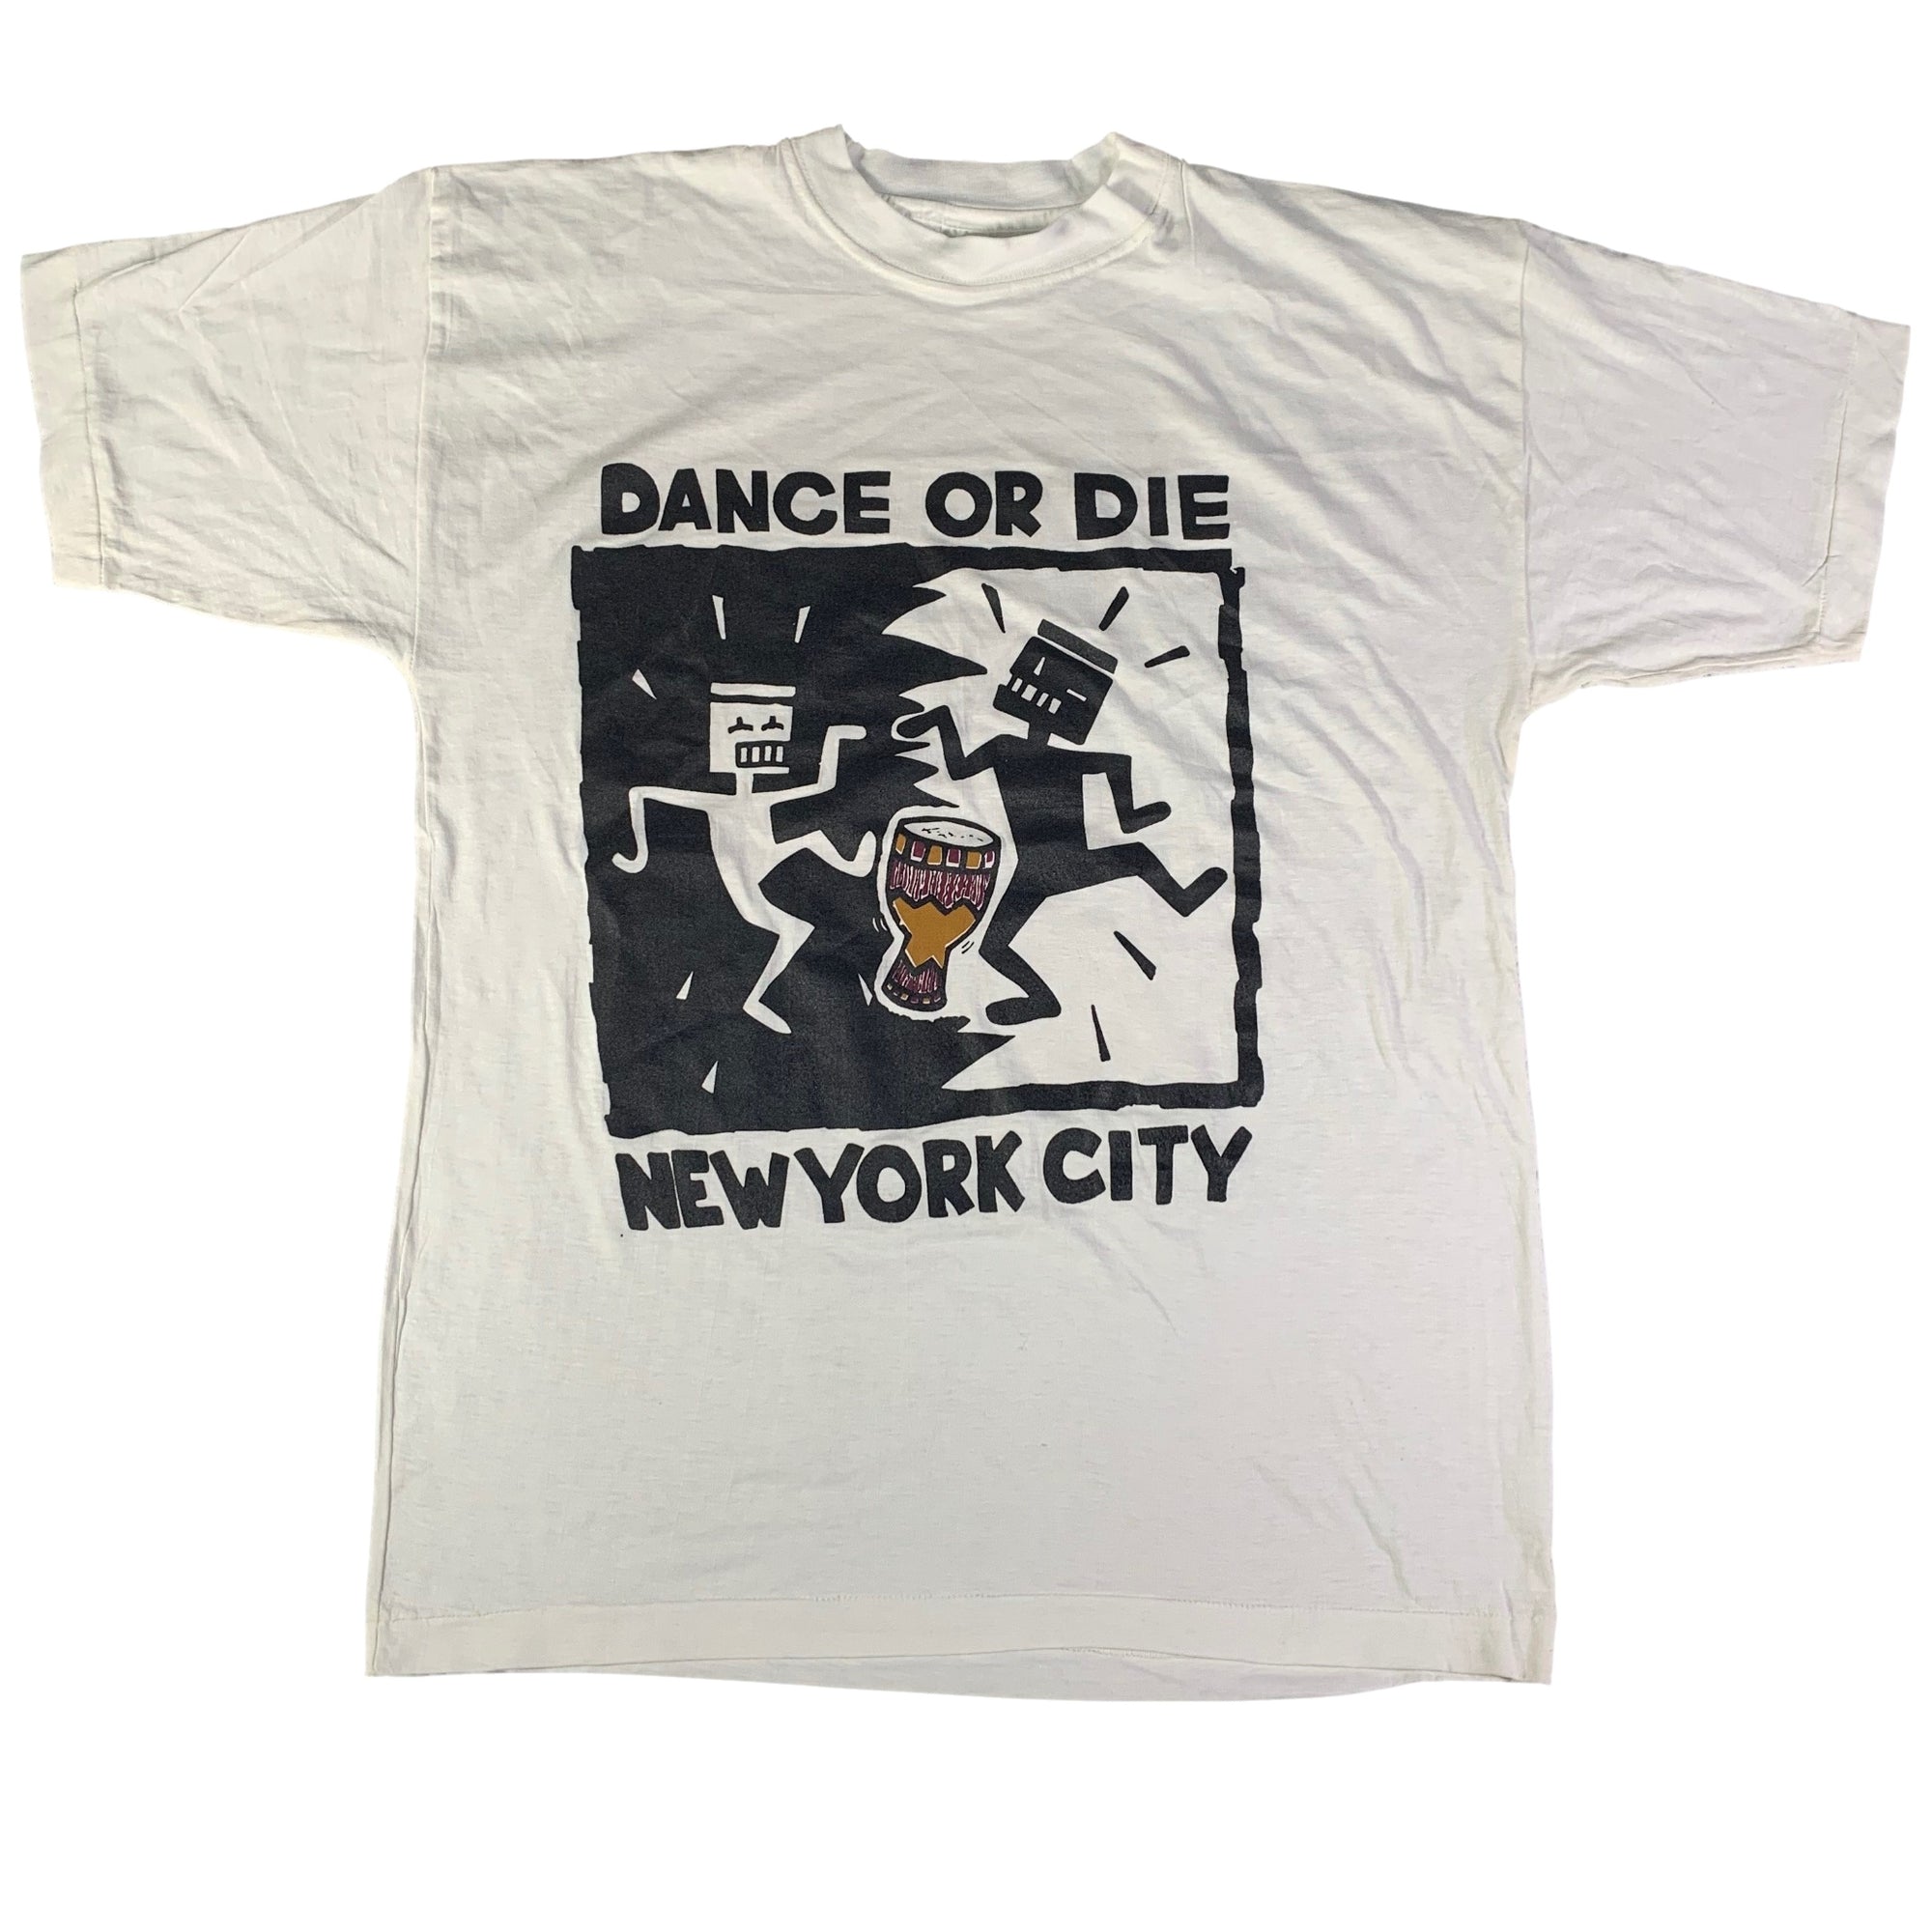 Vintage Keith Haring "Dance Or Die" T-Shirt - jointcustodydc